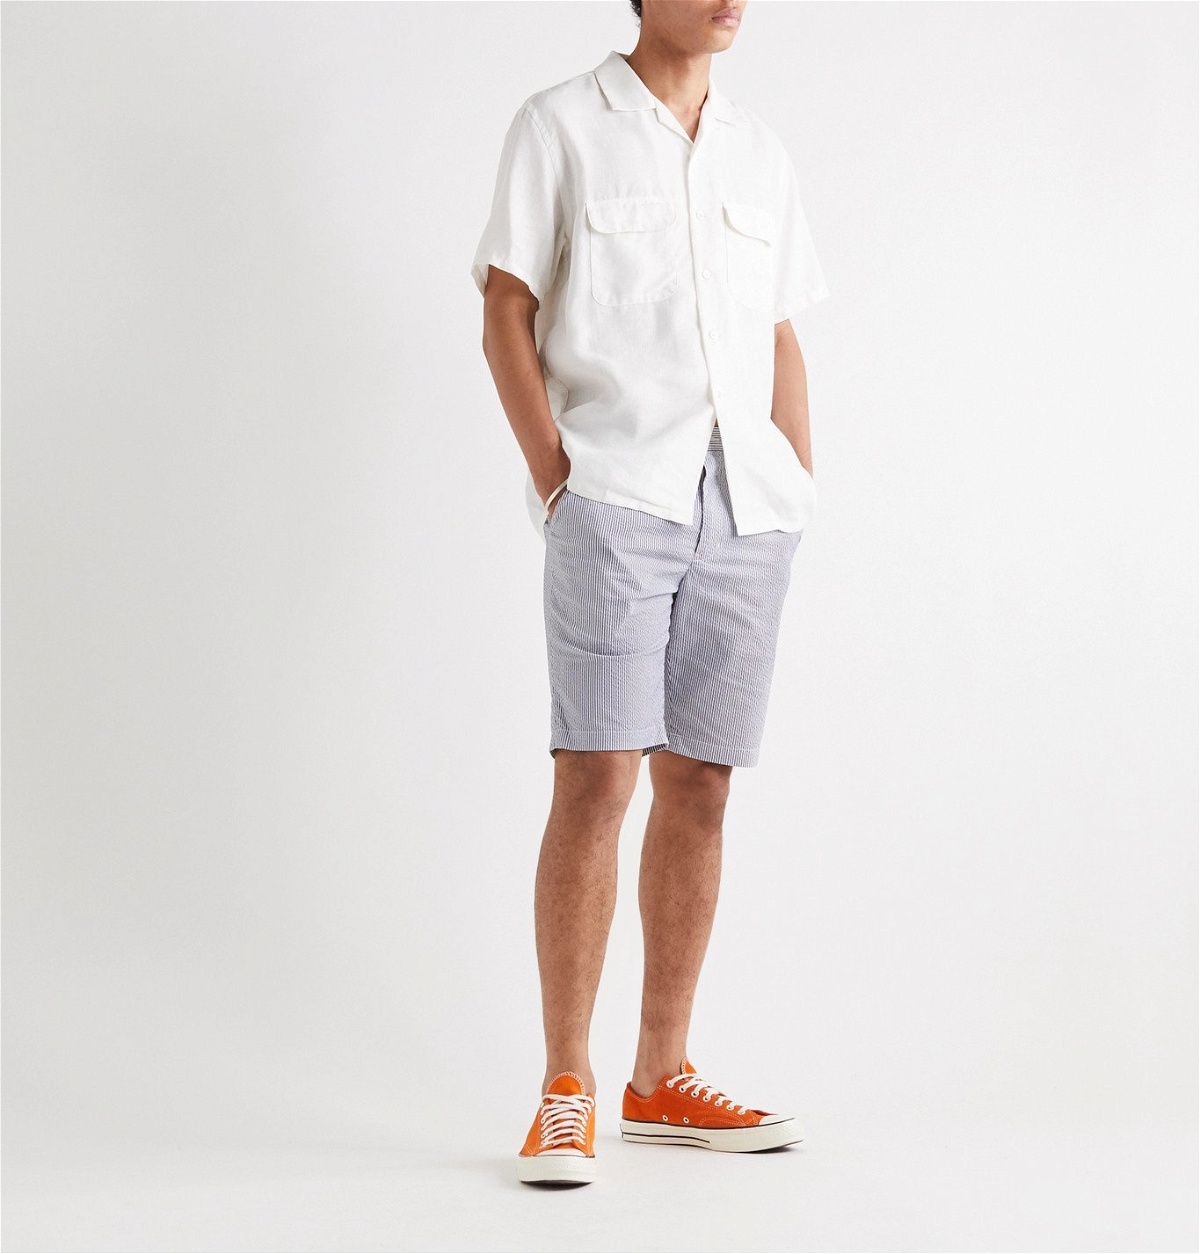 Beams Plus - Slim-Fit Striped Seersucker Shorts - White Beams Plus